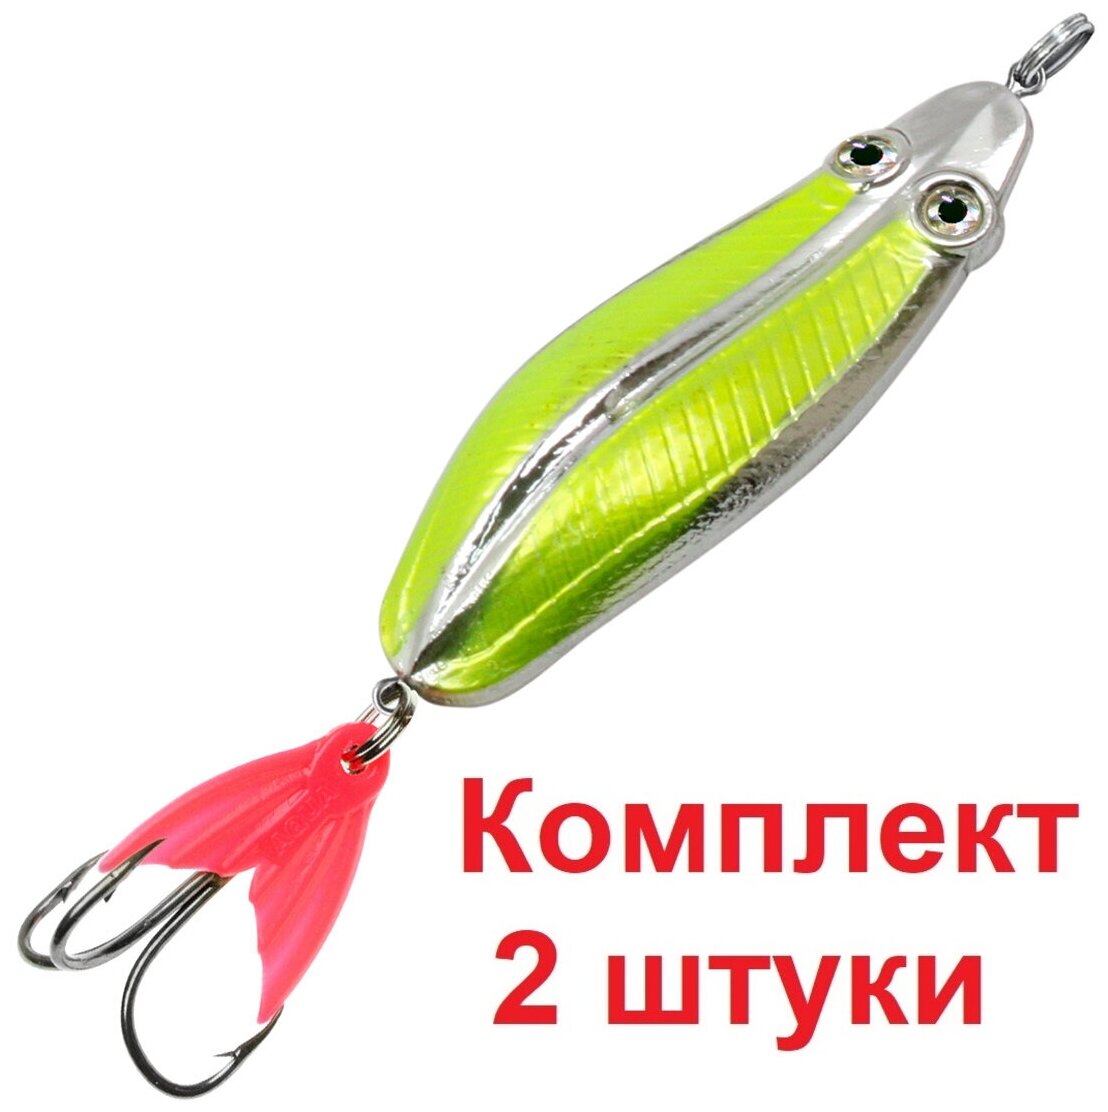 Блесна для рыбалки AQUA ЖУК 09,0g цвет 04 (серебро, желто-зеленый флюрик), 2 штуки в комплекте